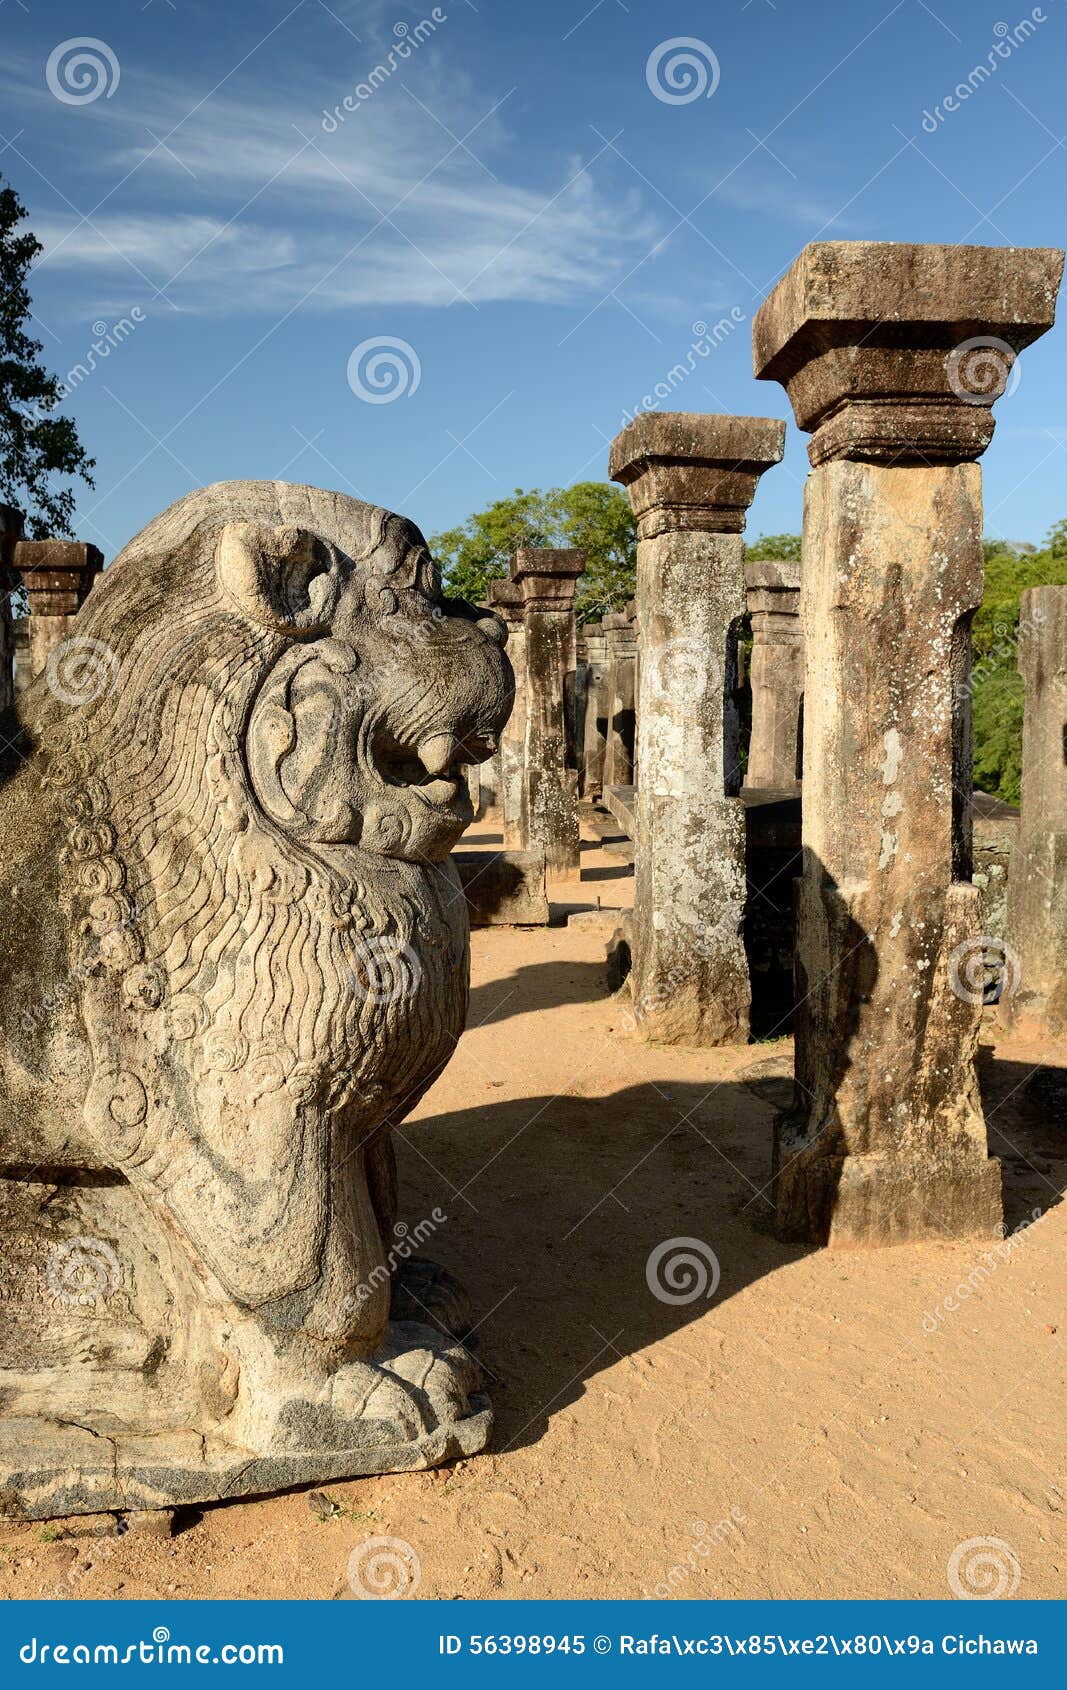 polonnaruwa ruin, nissanka mallas palace, sri lanka